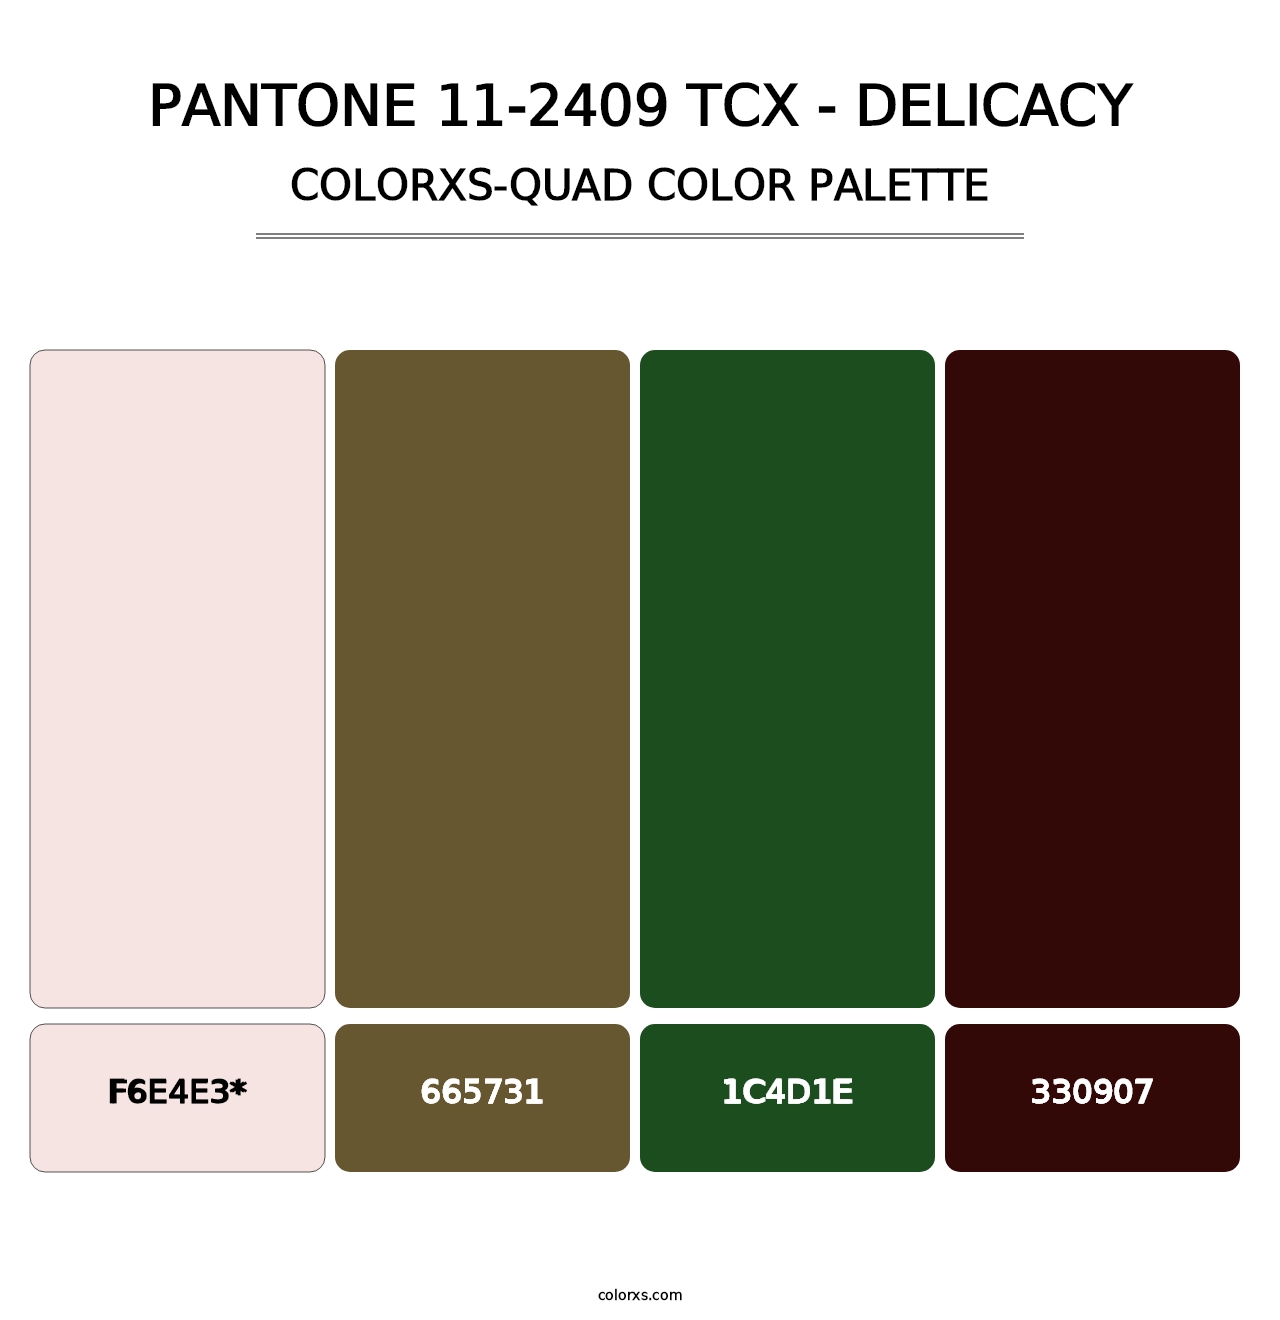 PANTONE 11-2409 TCX - Delicacy - Colorxs Quad Palette